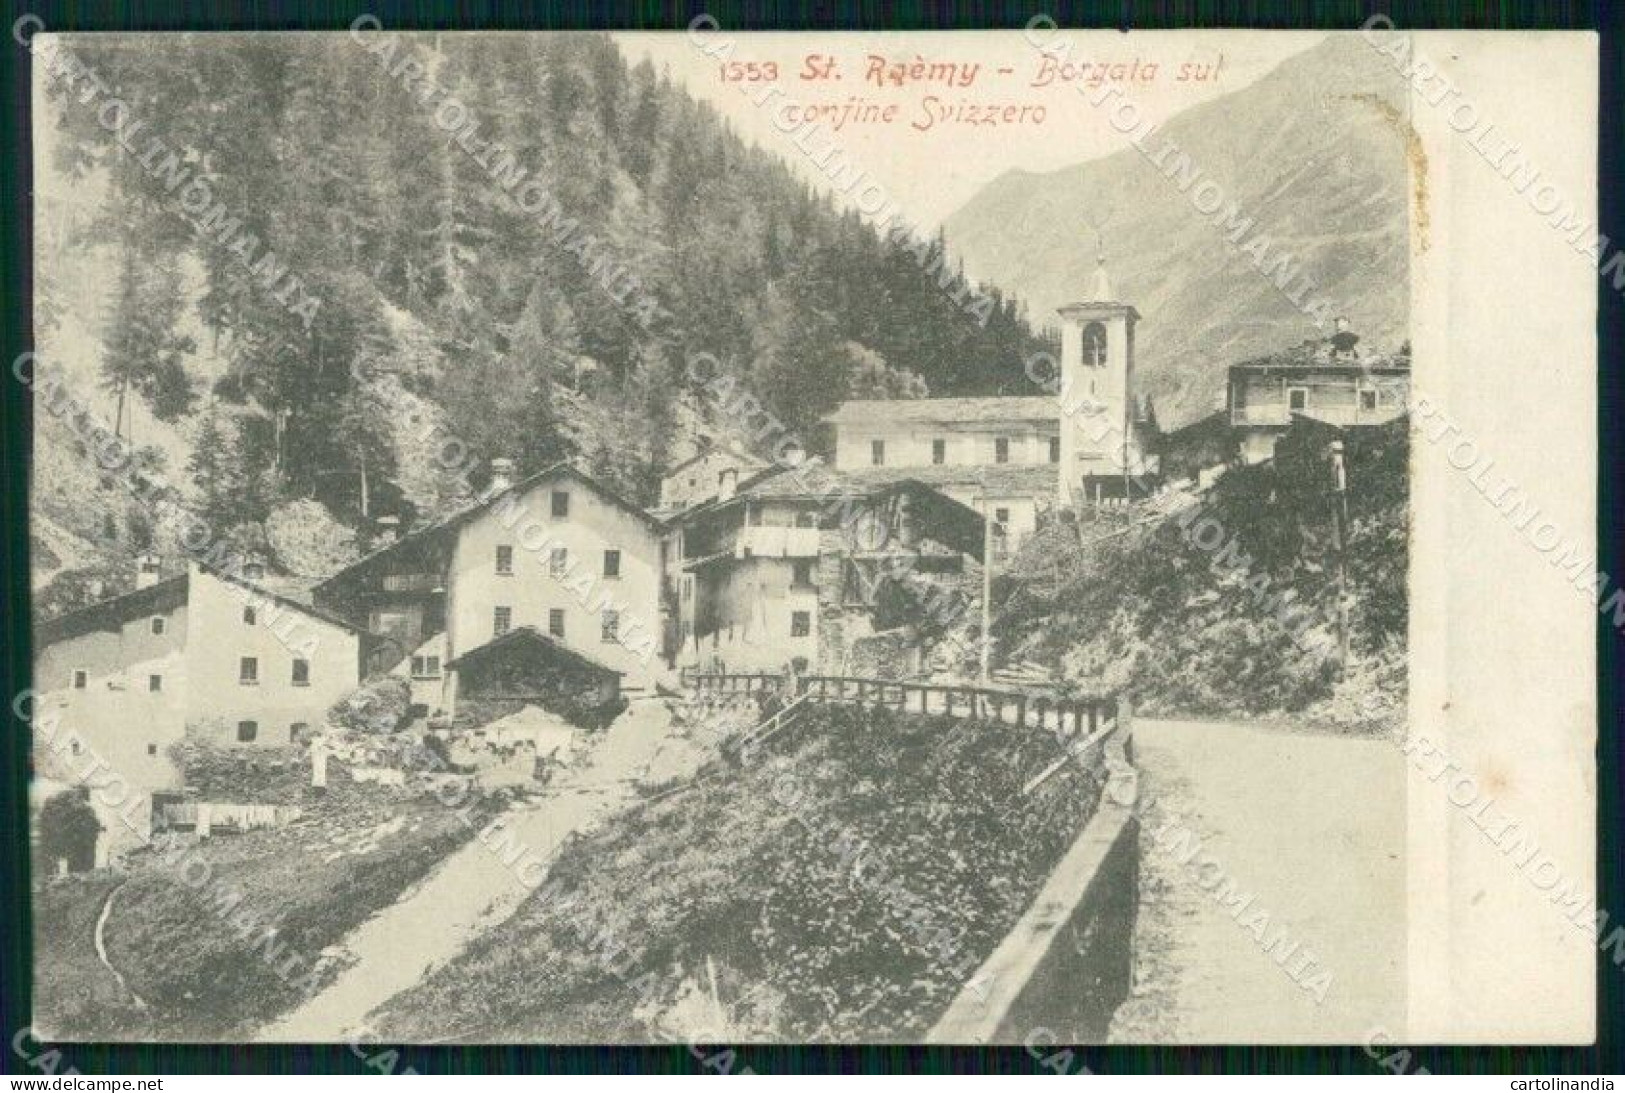 Aosta Saint Rhémy Borgata Sul Confine Svizzero Cartolina RT1622 - Aosta